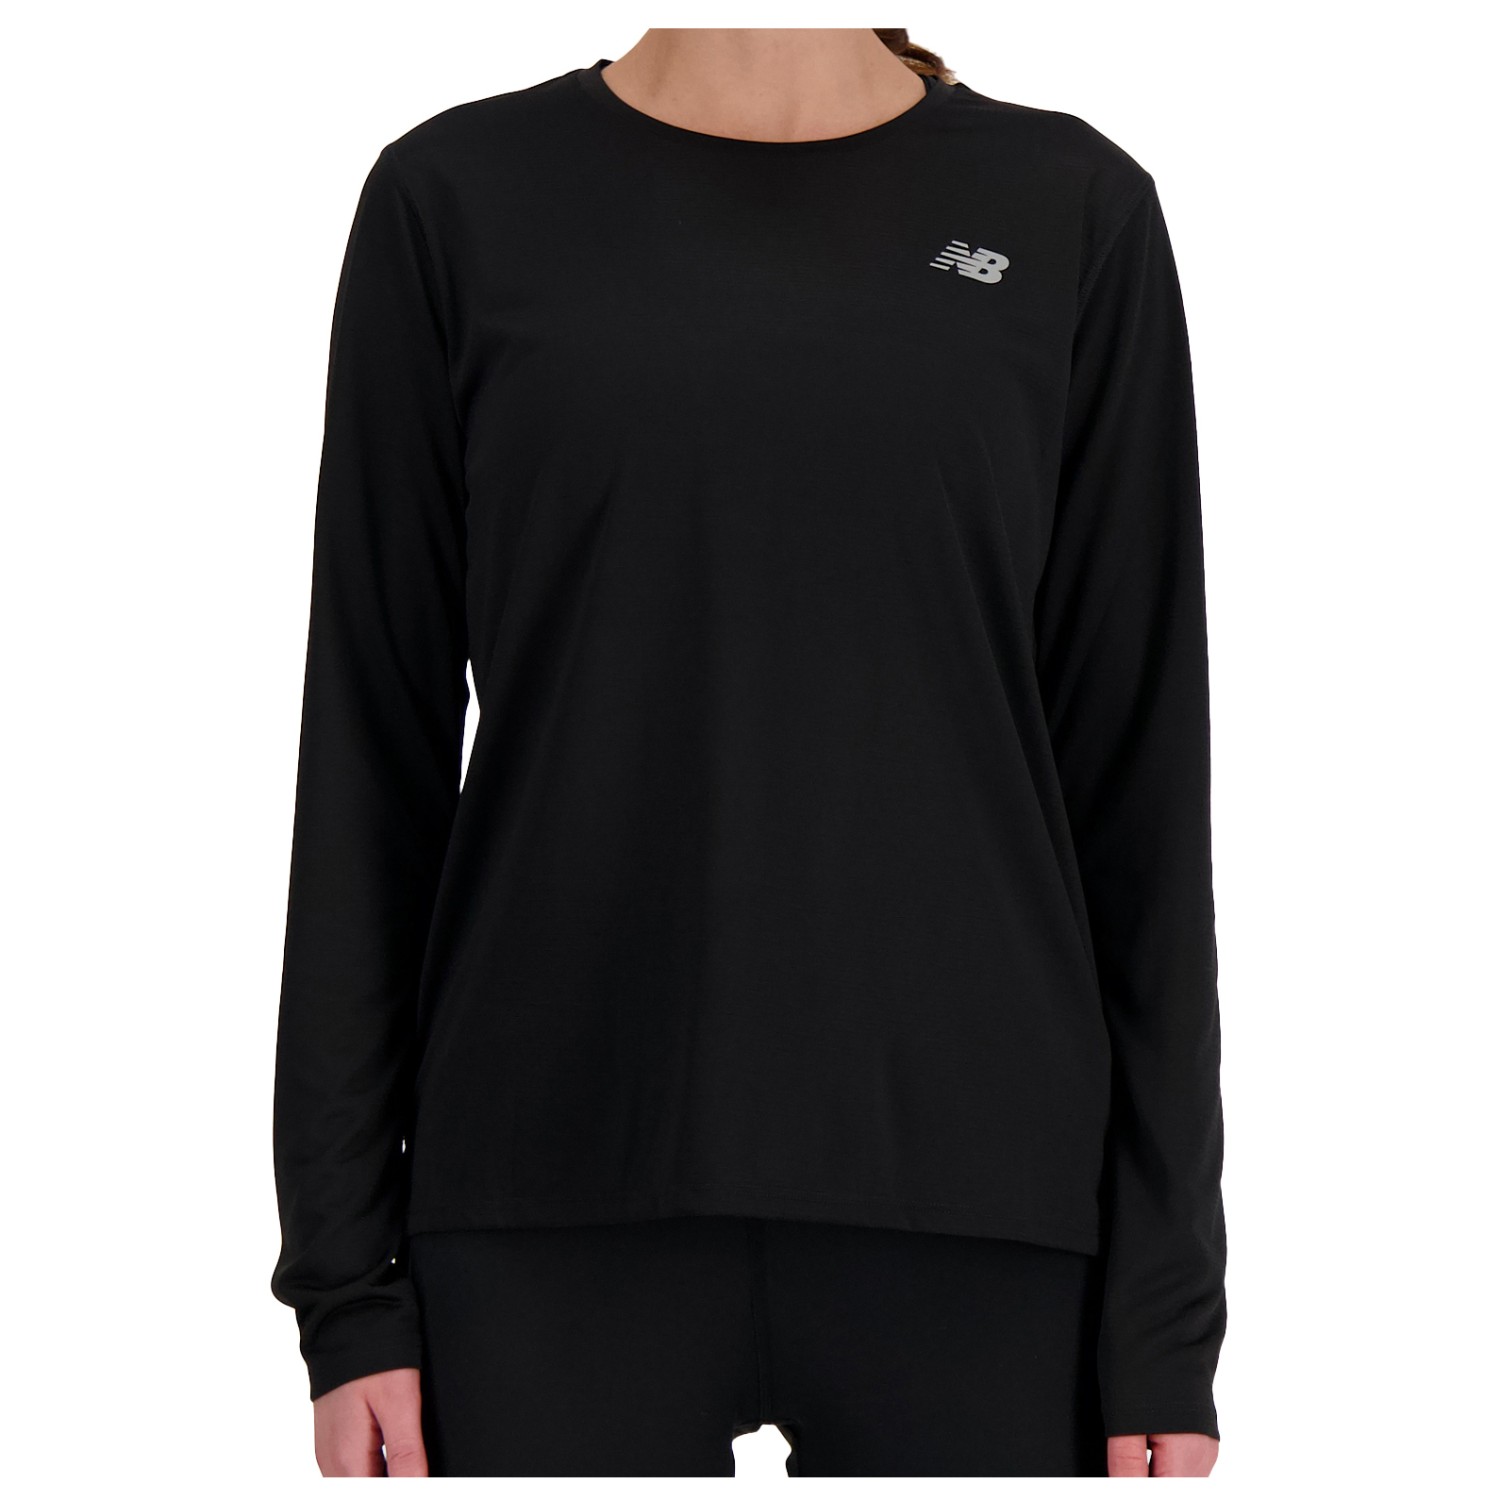 Беговая рубашка New Balance Women's Sport Essentials L/S, черный футболка new balance размер l [producenta mirakl] синий